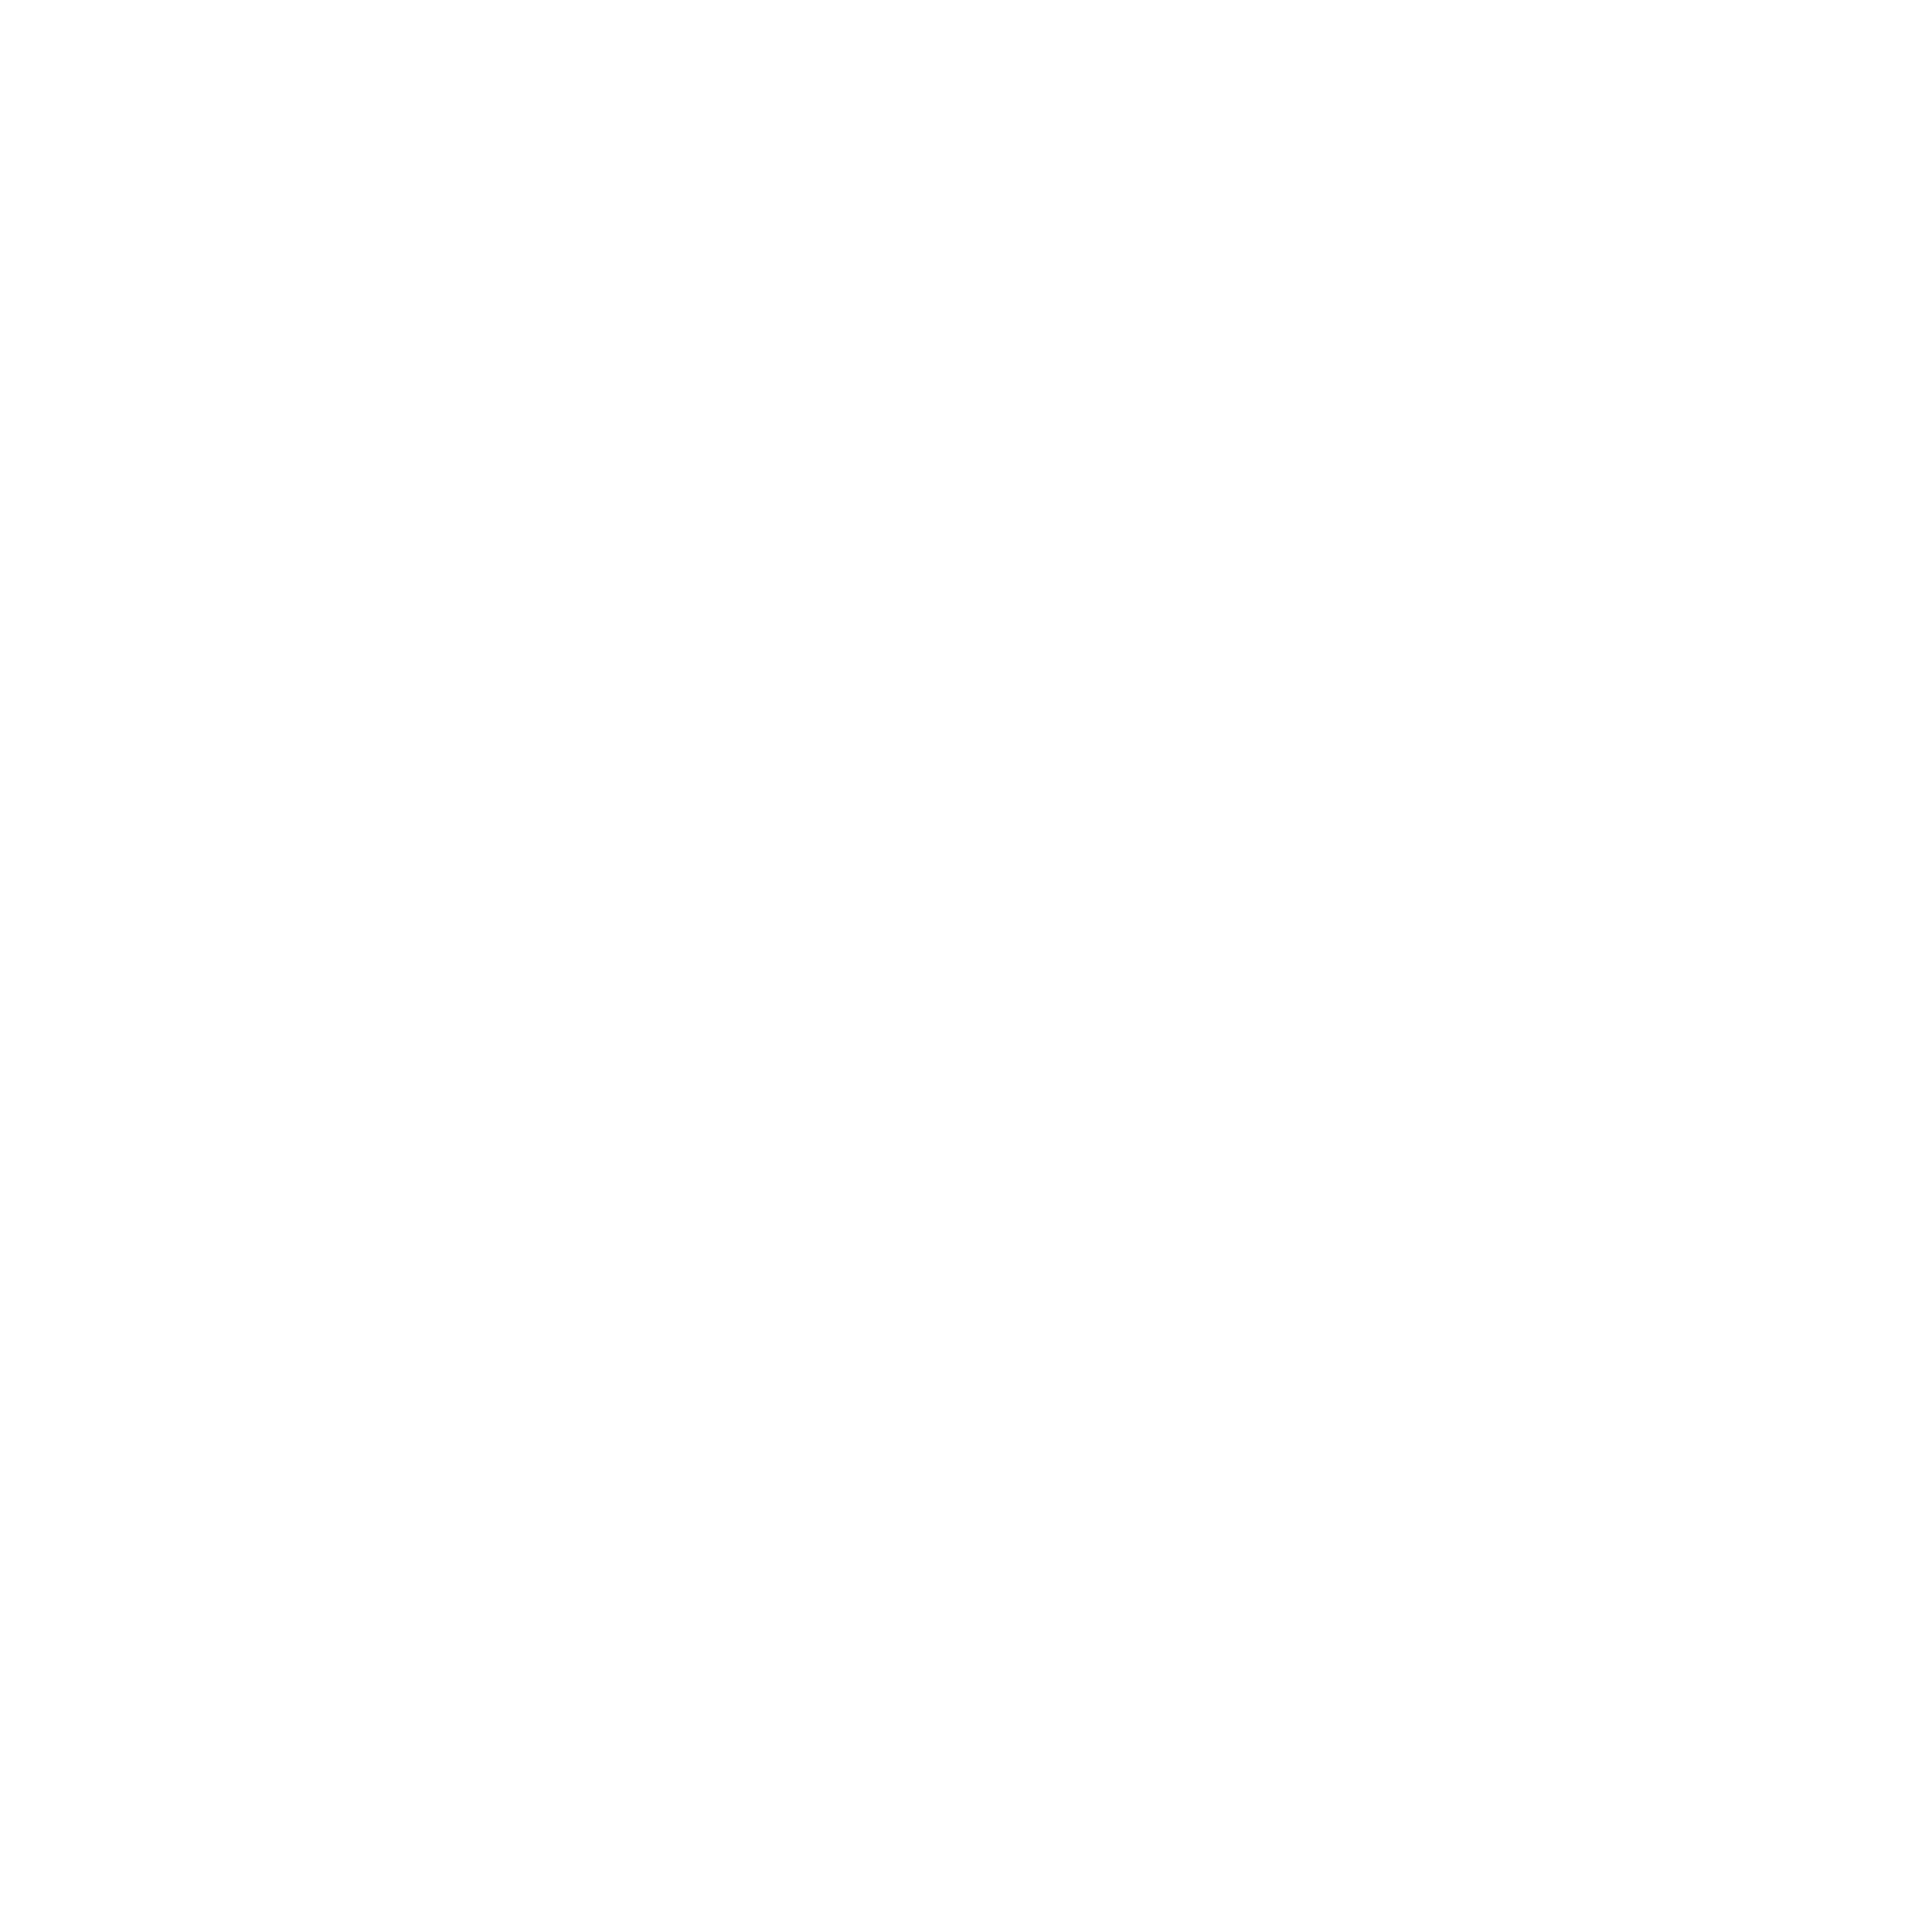 India Concept